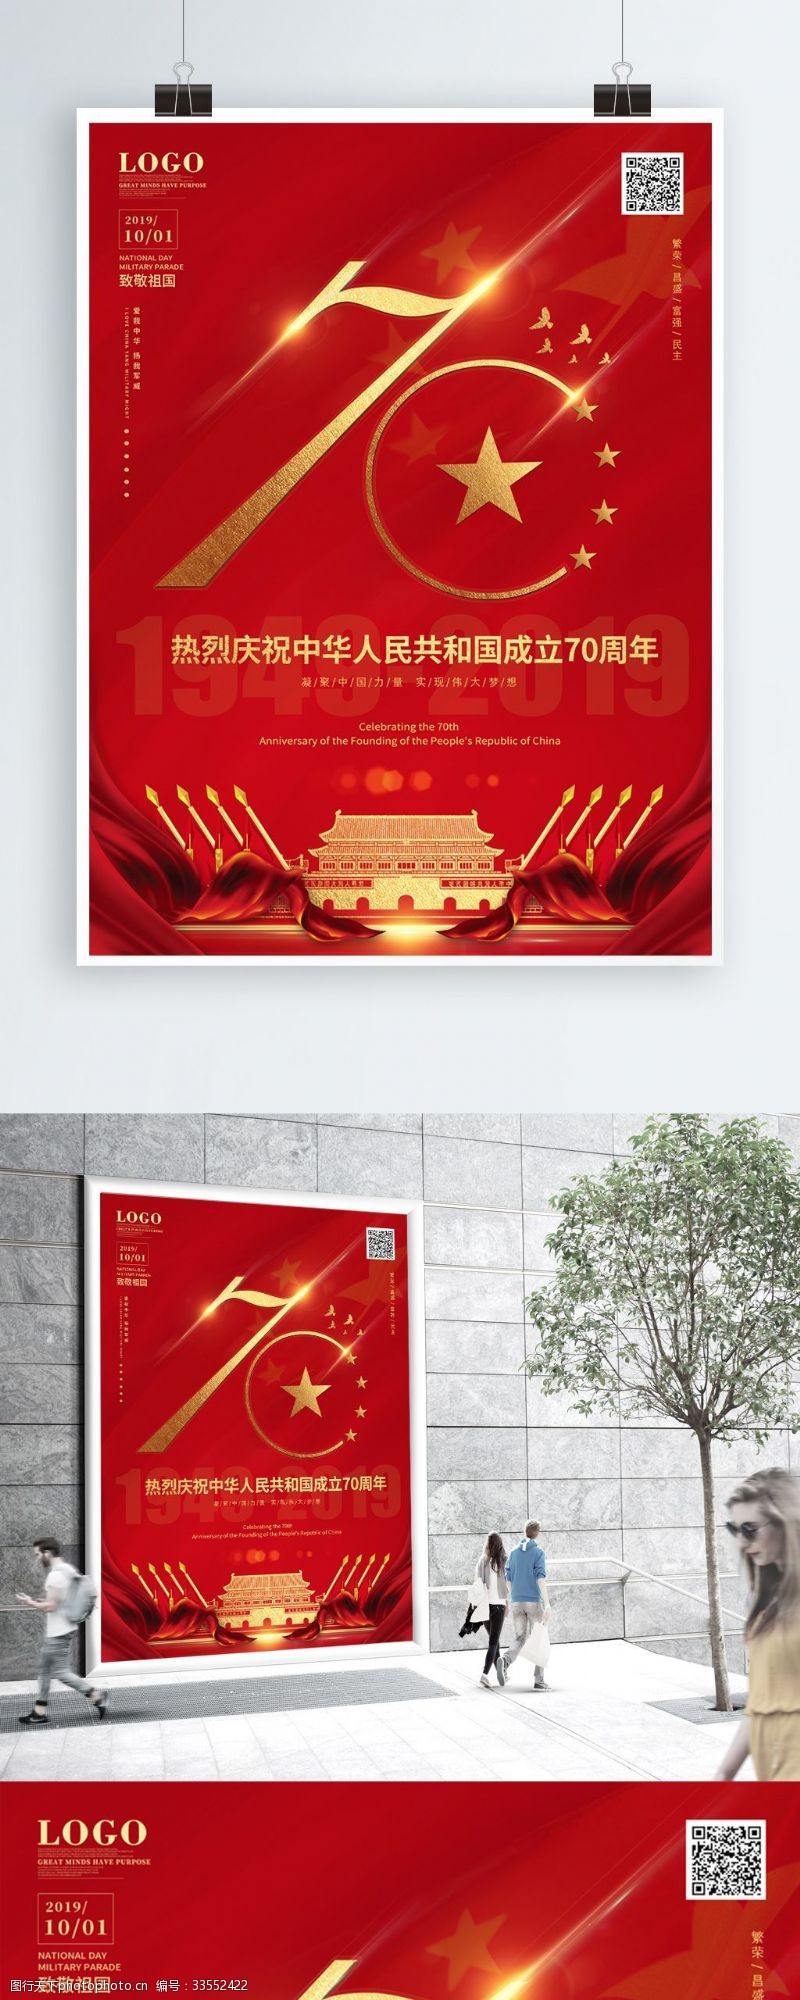 宣传周祝贺新中国成立70周年国庆节宣传海报